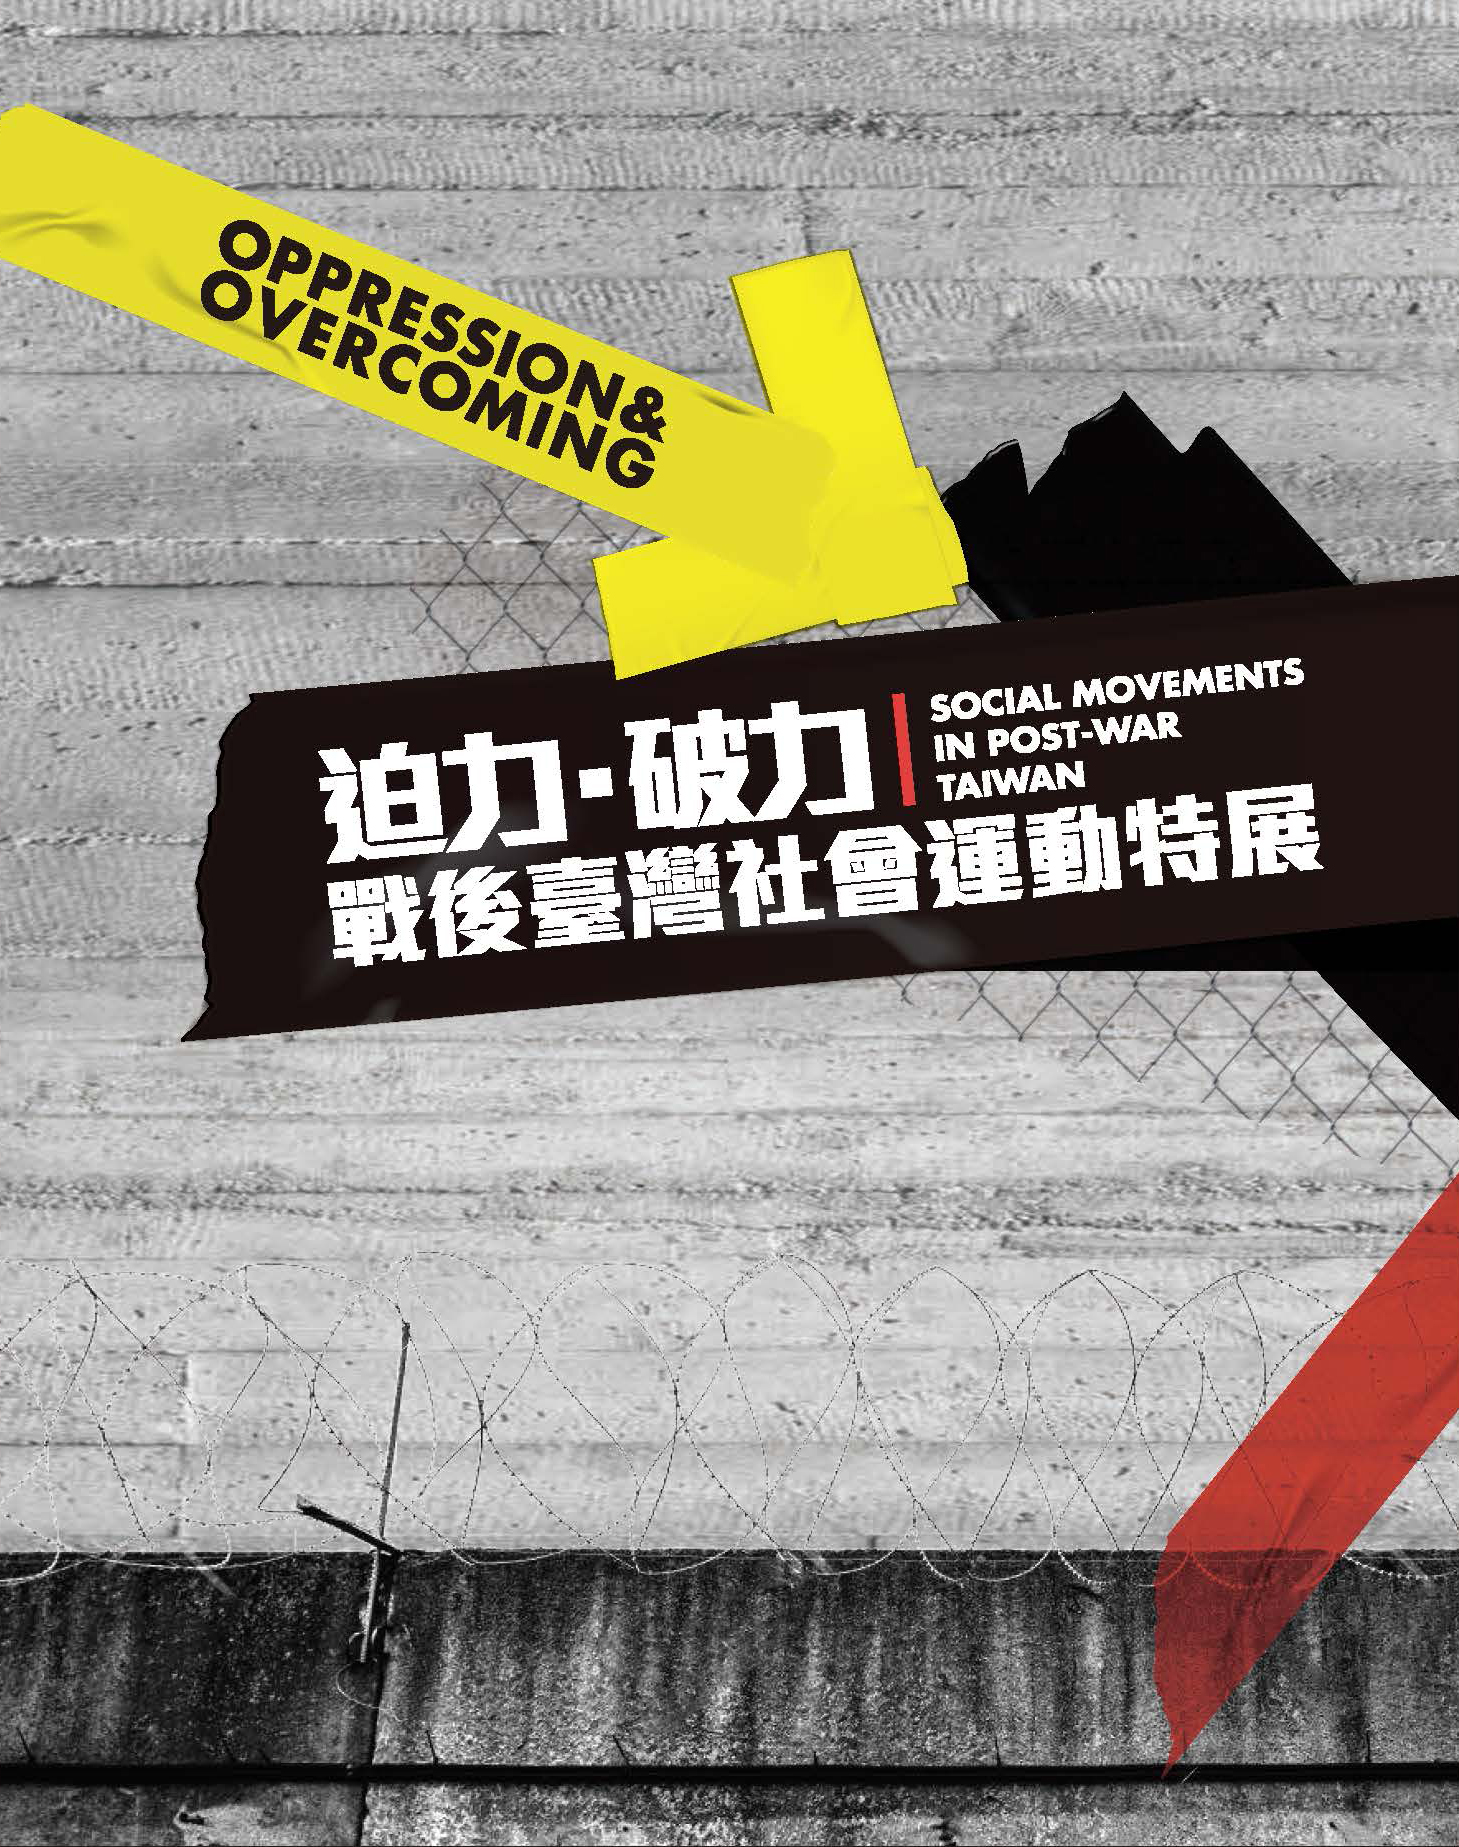 《迫力‧破力：戰後臺灣社會運動特展》展覽特刊